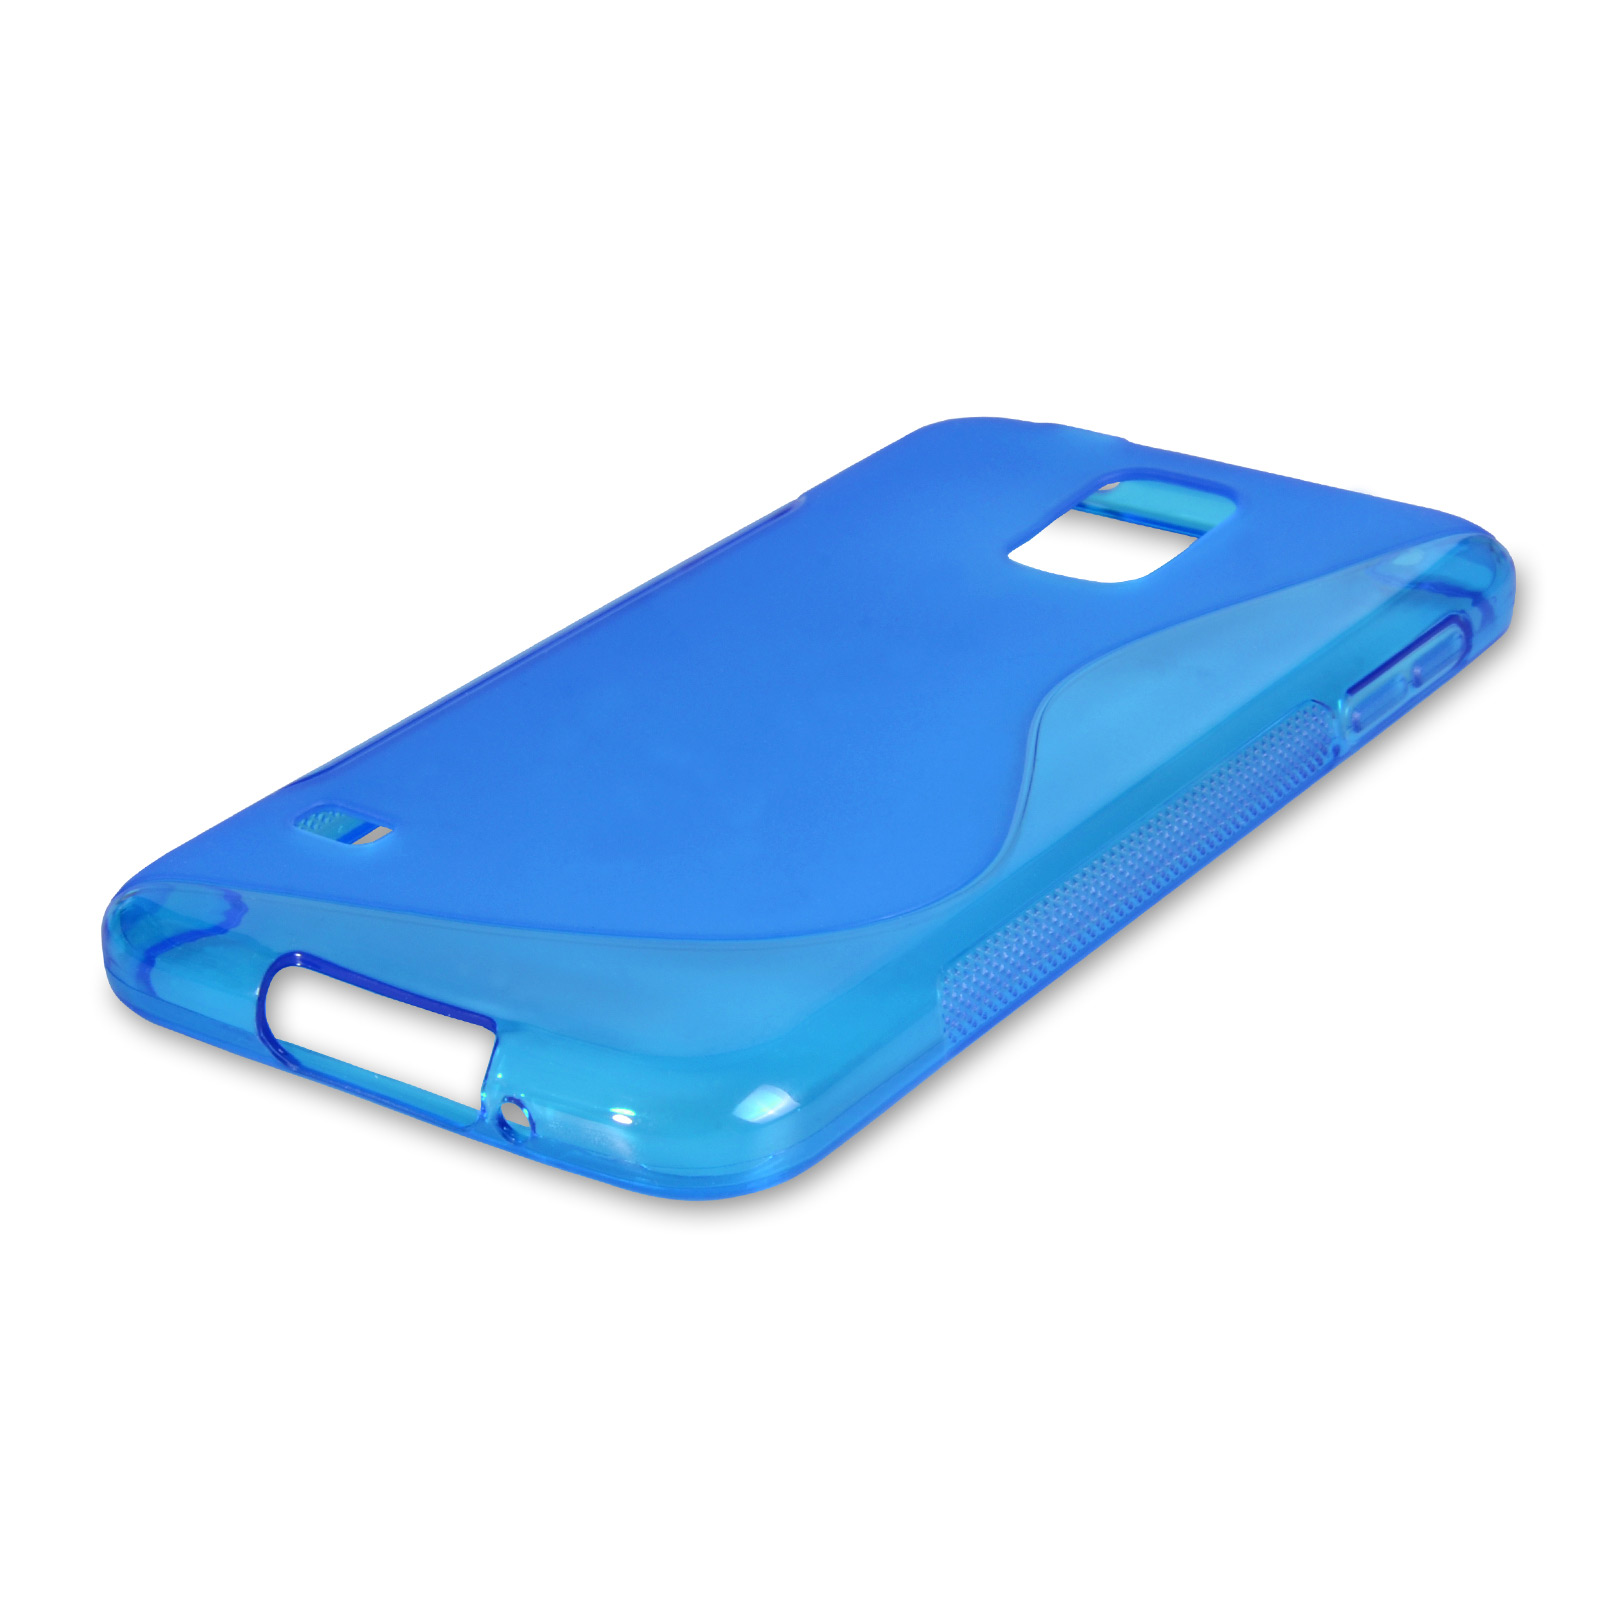 Caseflex Samsung Galaxy S5 Silicone Gel S-Line Case - Blue